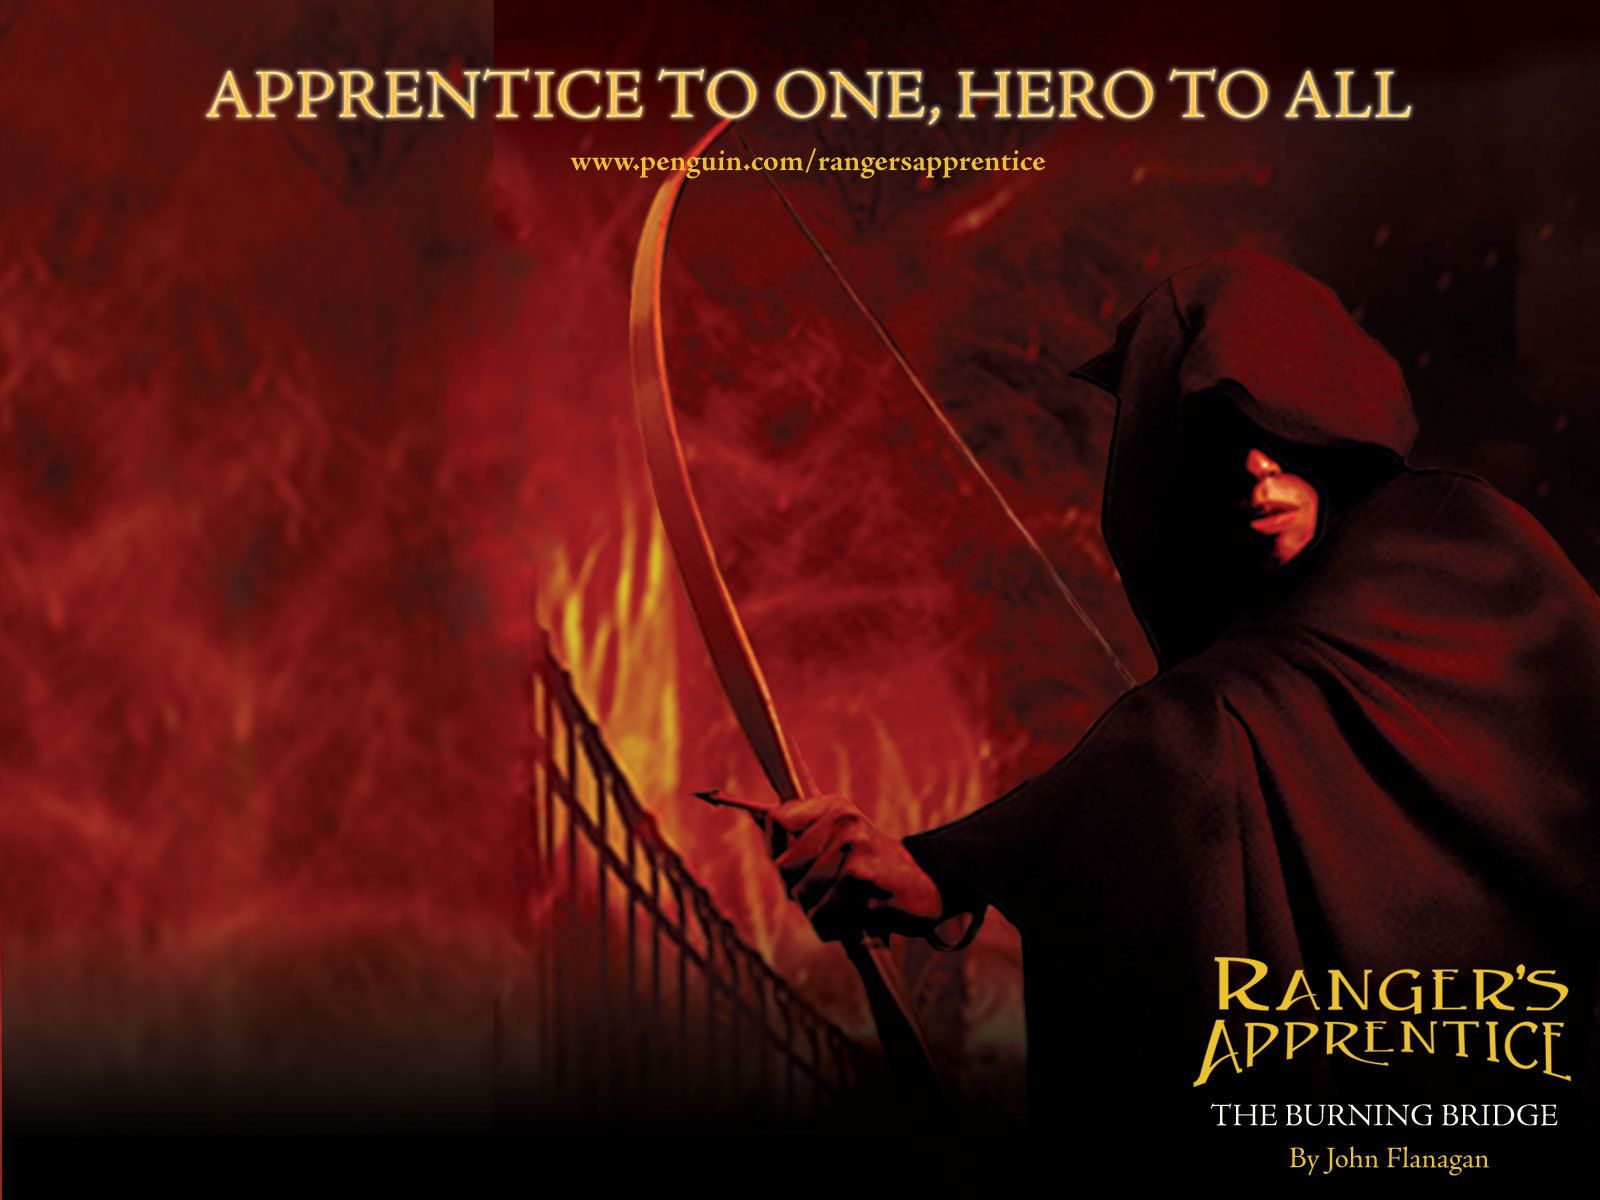 The Burning Bridge* Ranger's Apprentice Wallpaper